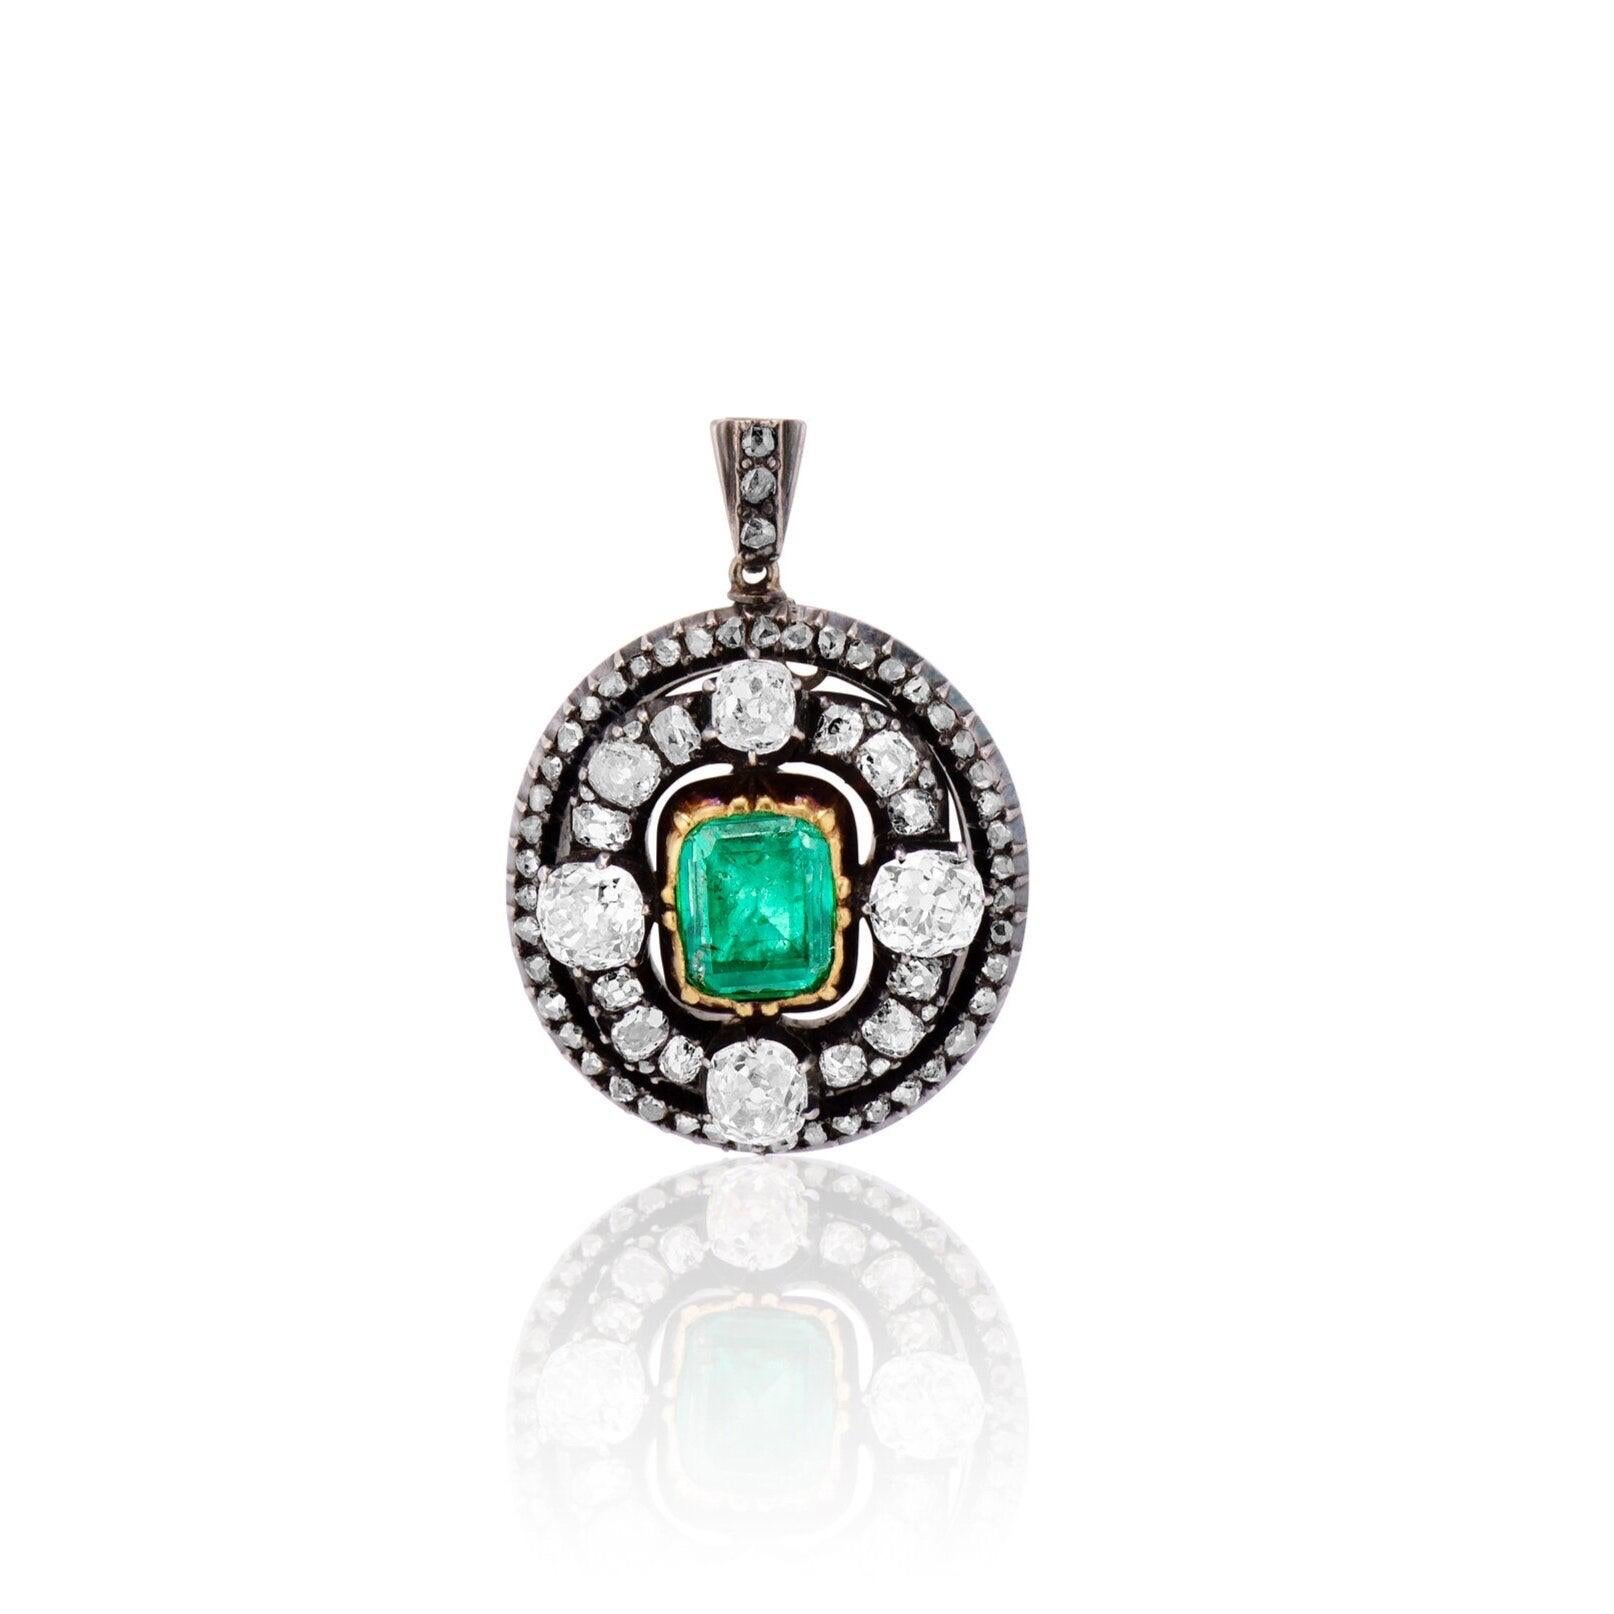 Ce pendentif royal du milieu du 19e siècle est centré sur une magnifique émeraude verte sertie en or. L'émeraude est présentée dans un cadre étincelant de diamants antiques de taille coussin de 2,20ctw aux points cardinaux, et entourée d'un halo de